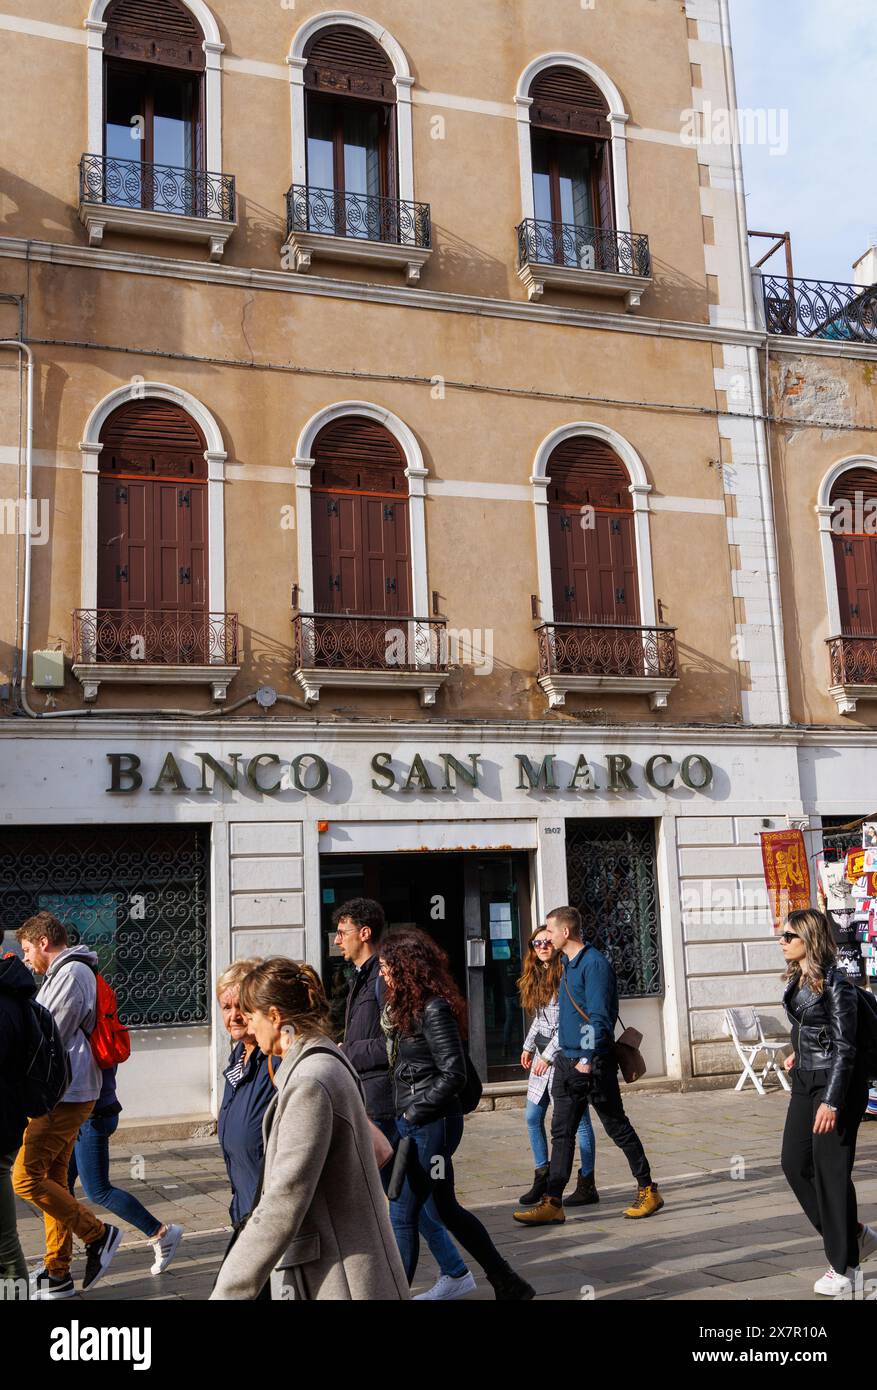 Venise, Province de Venise, région de Vénétie, Italie. Une succursale de Banco San Marco à Rio Tera S. Leonardo 1906. Venise est classée au patrimoine mondial de l'UNESCO. Banque D'Images